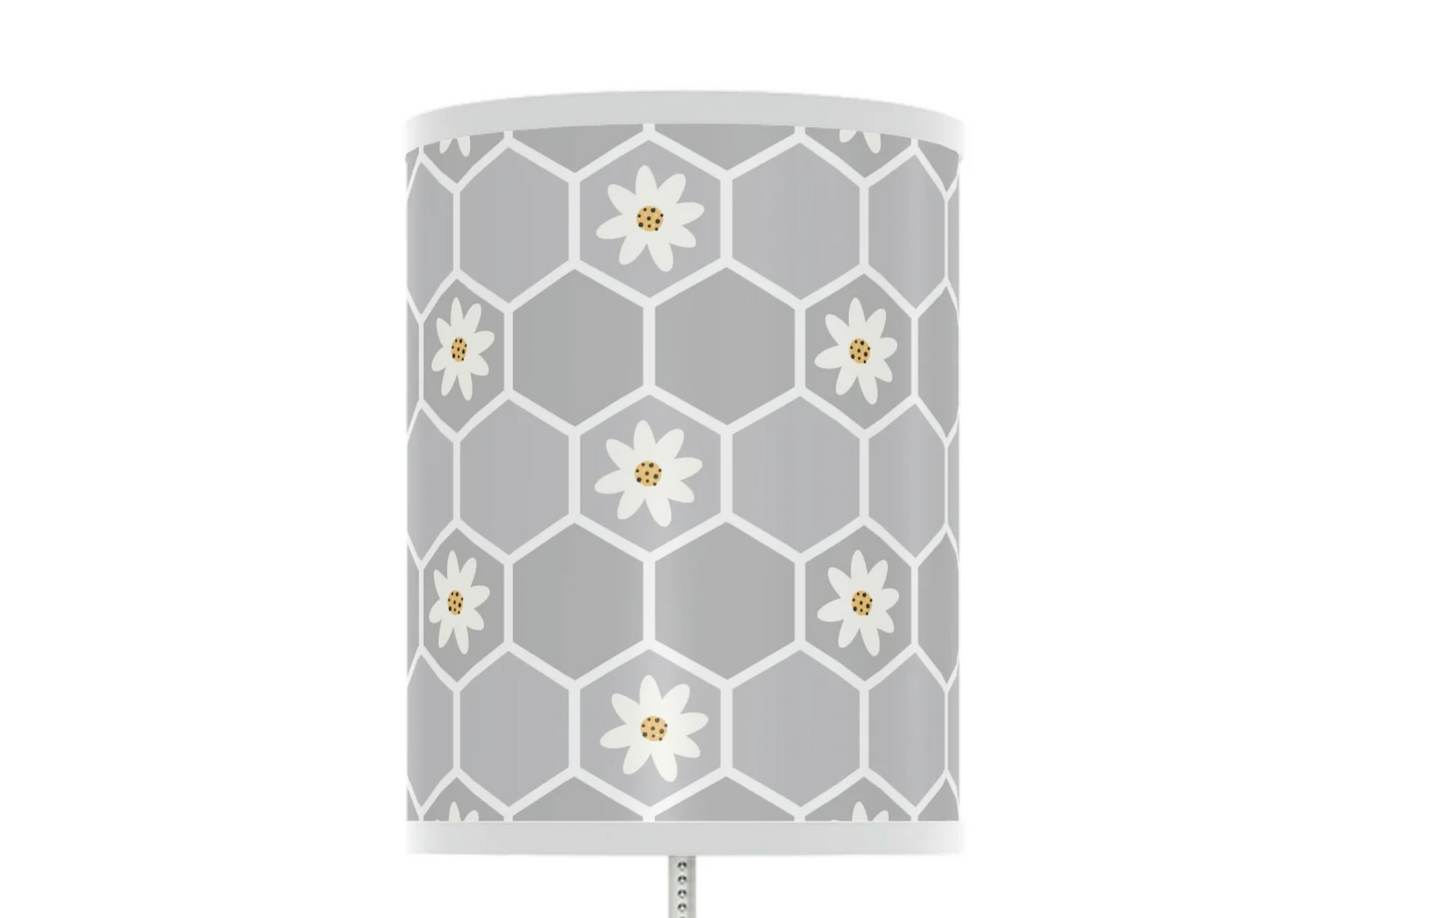 Grey Honeycomb Floral Baby Lamp - Honeybee Nursery Table Lamp